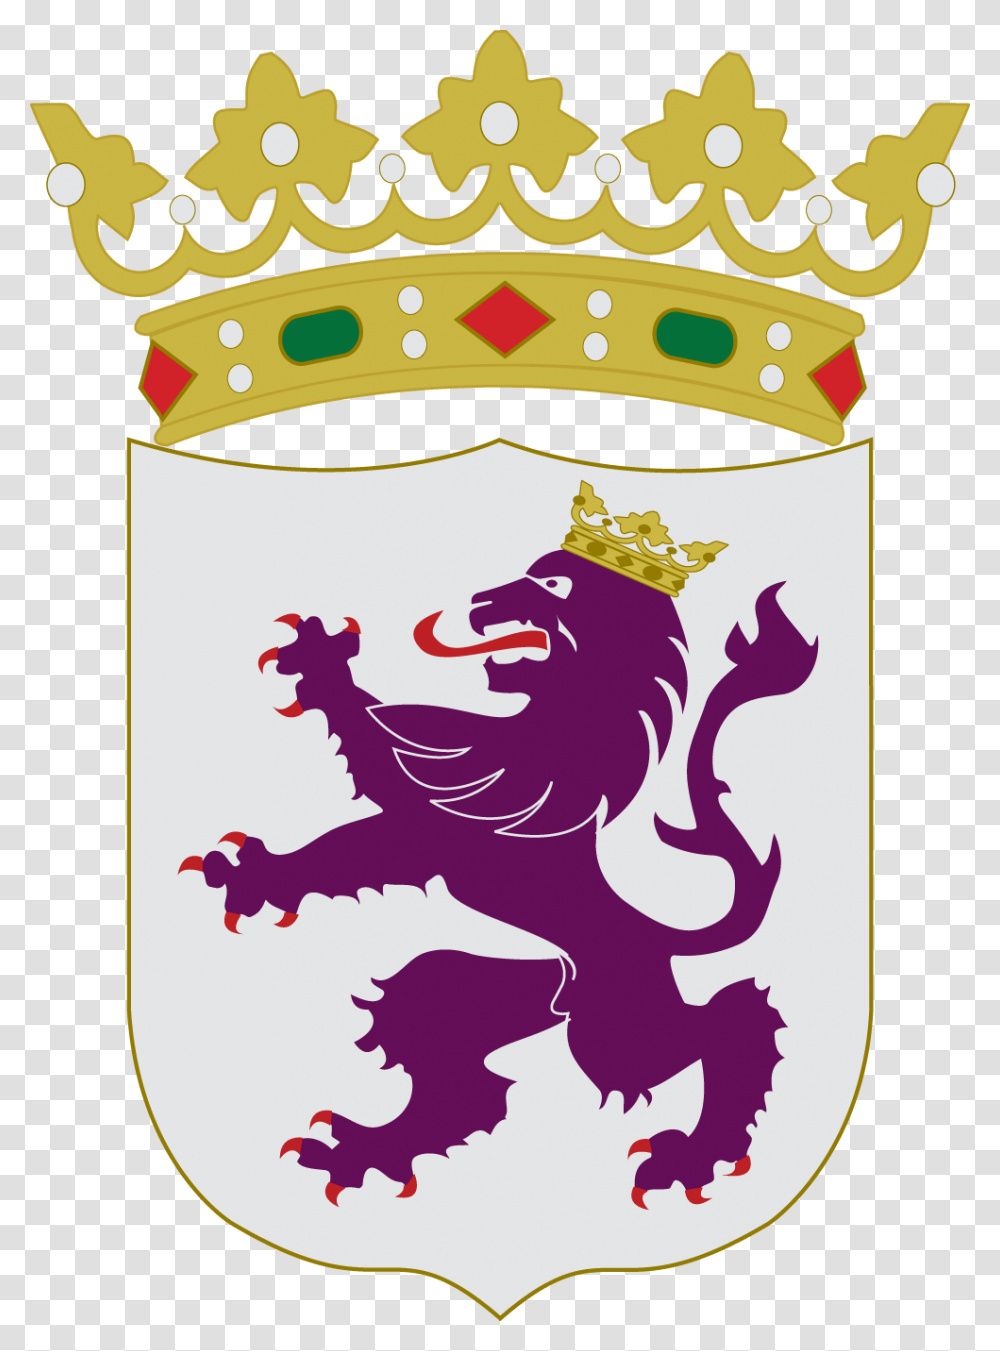 Escudo De Leon Lion On Spain Flag, Jewelry, Accessories, Accessory, Crown Transparent Png